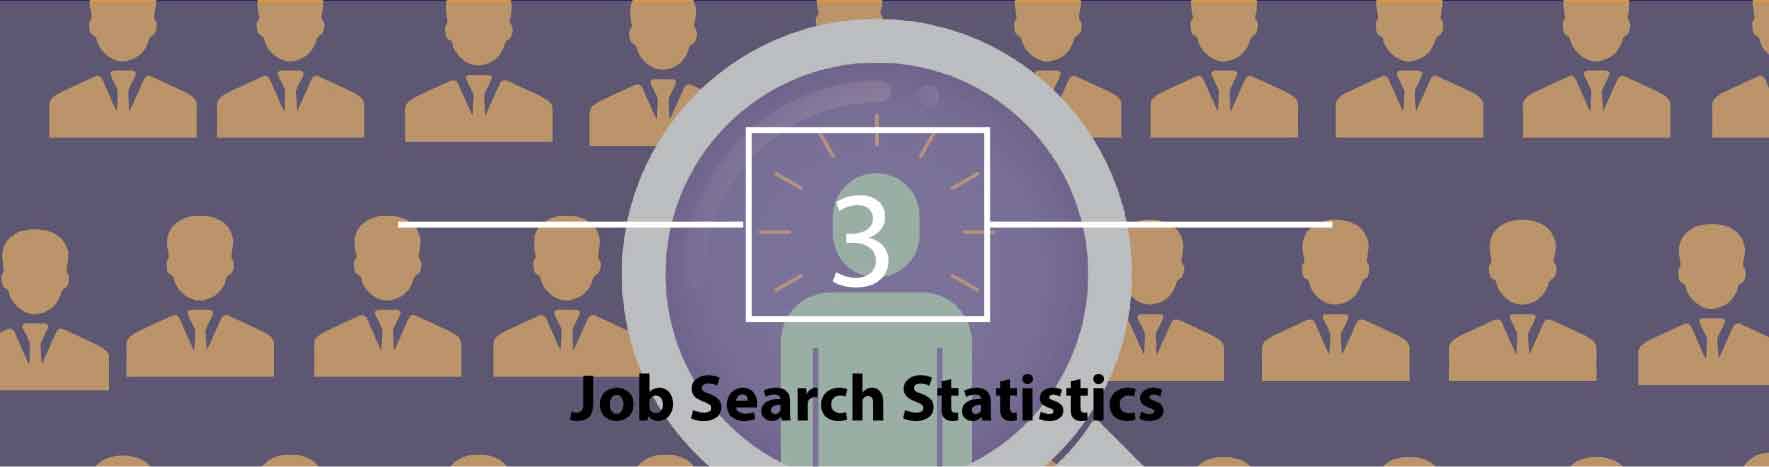 Job Search Statistics